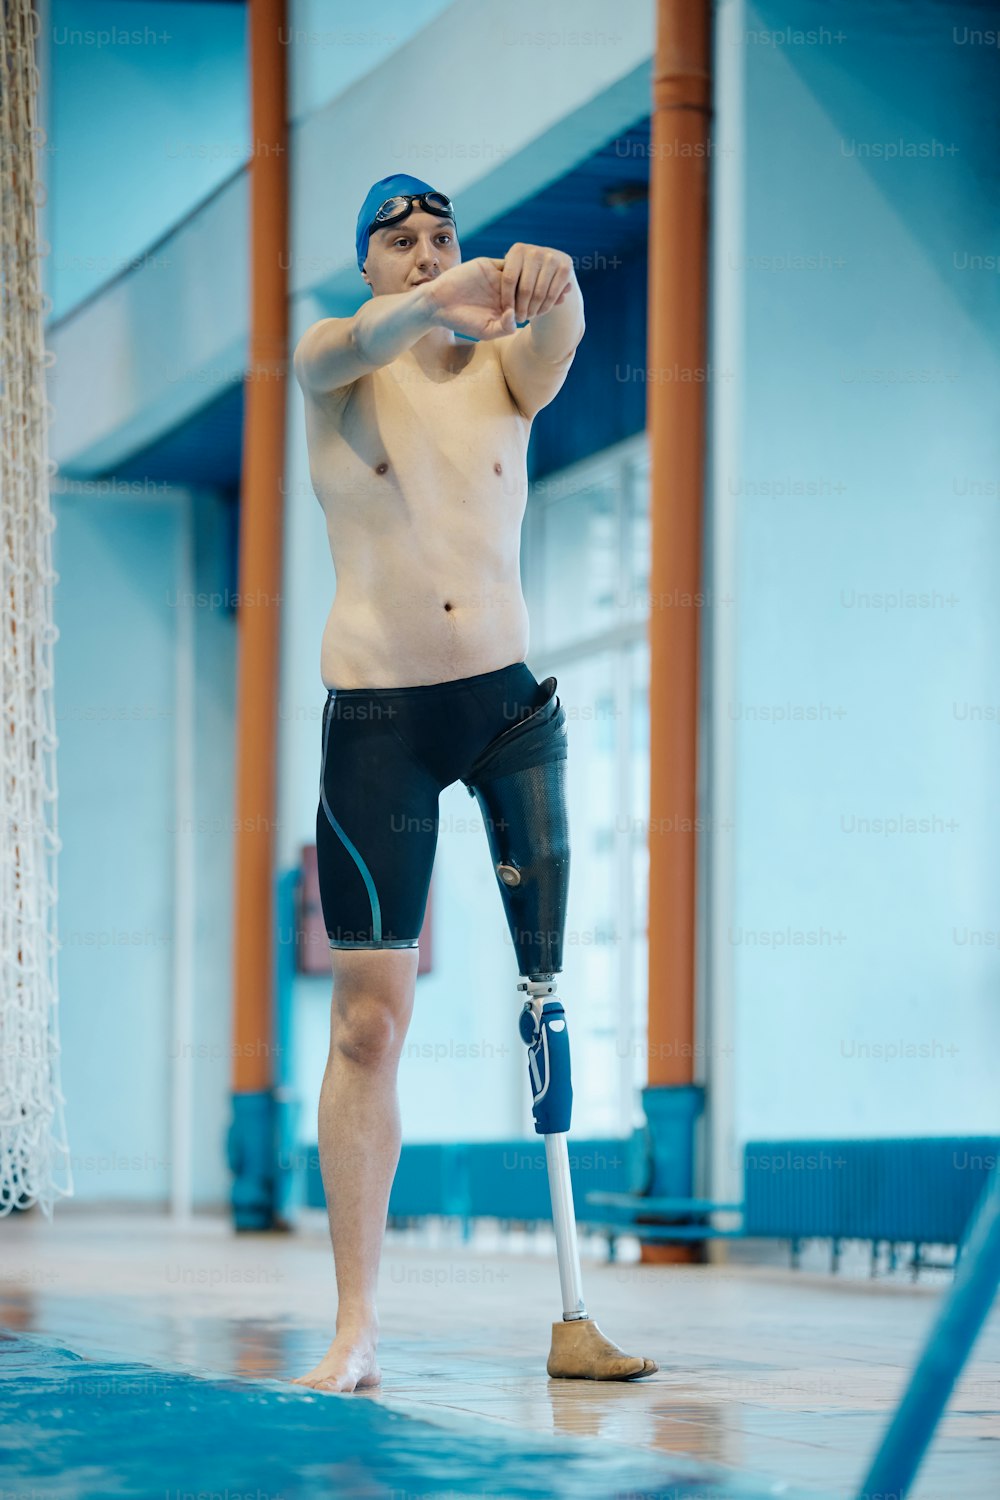 Schwimmer in voller Länge mit künstlichen Bein-Entspannungsübungen beim Aufwärmen für das Schwimmtraining im Hallenbad.